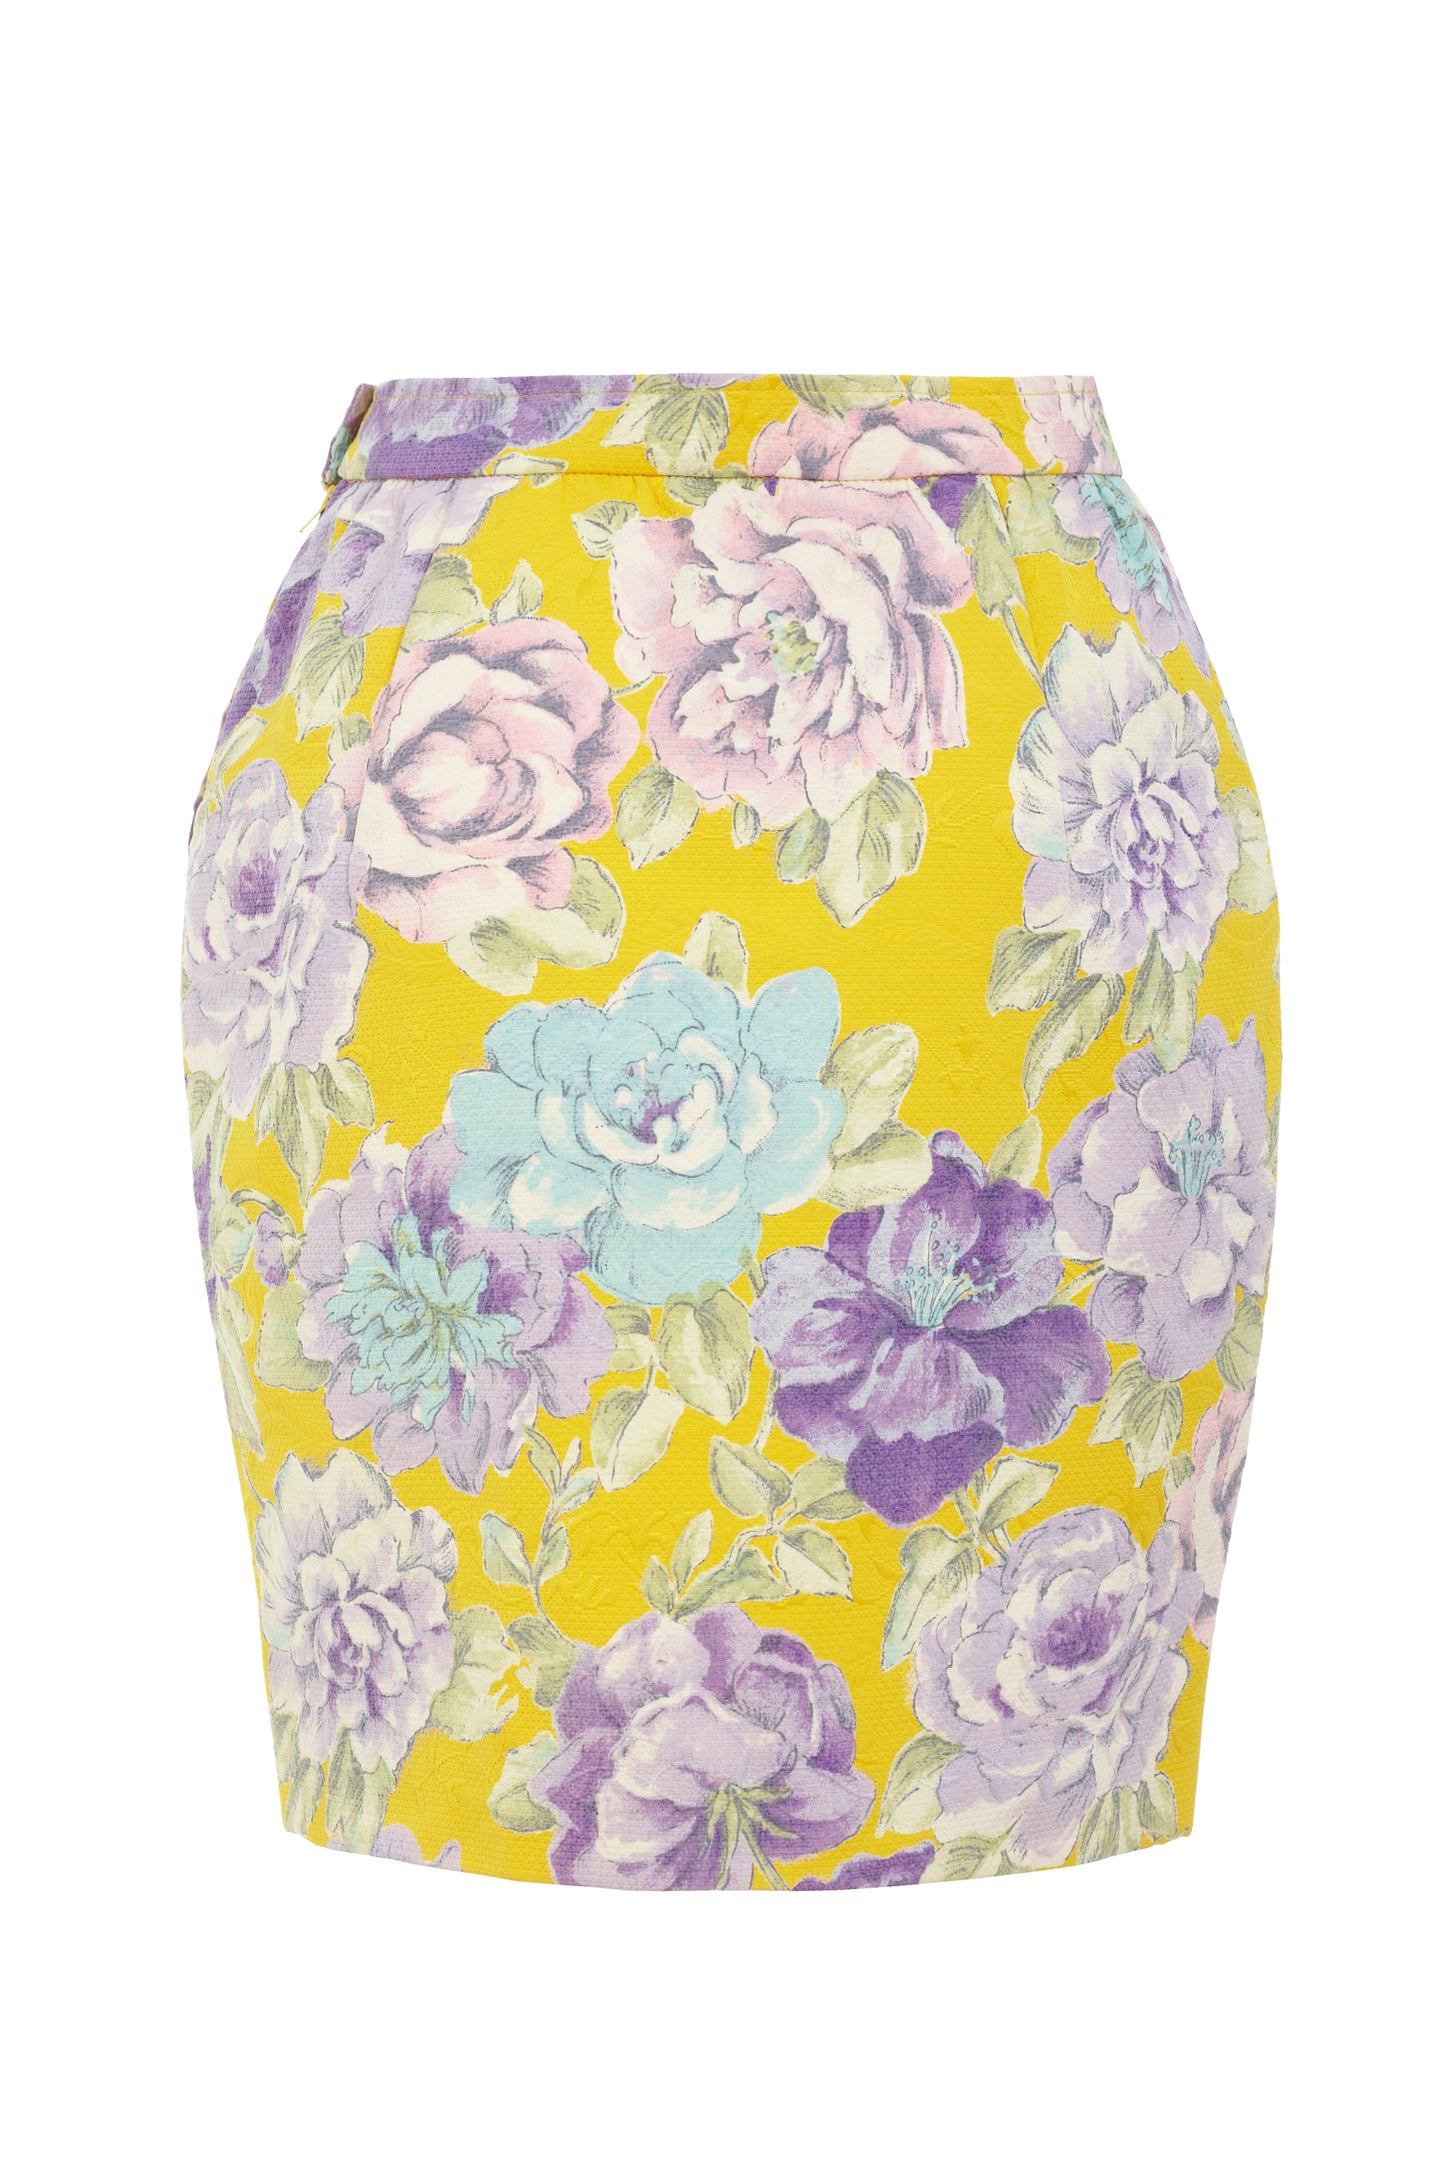 Emanuel Ungaro floral skirt